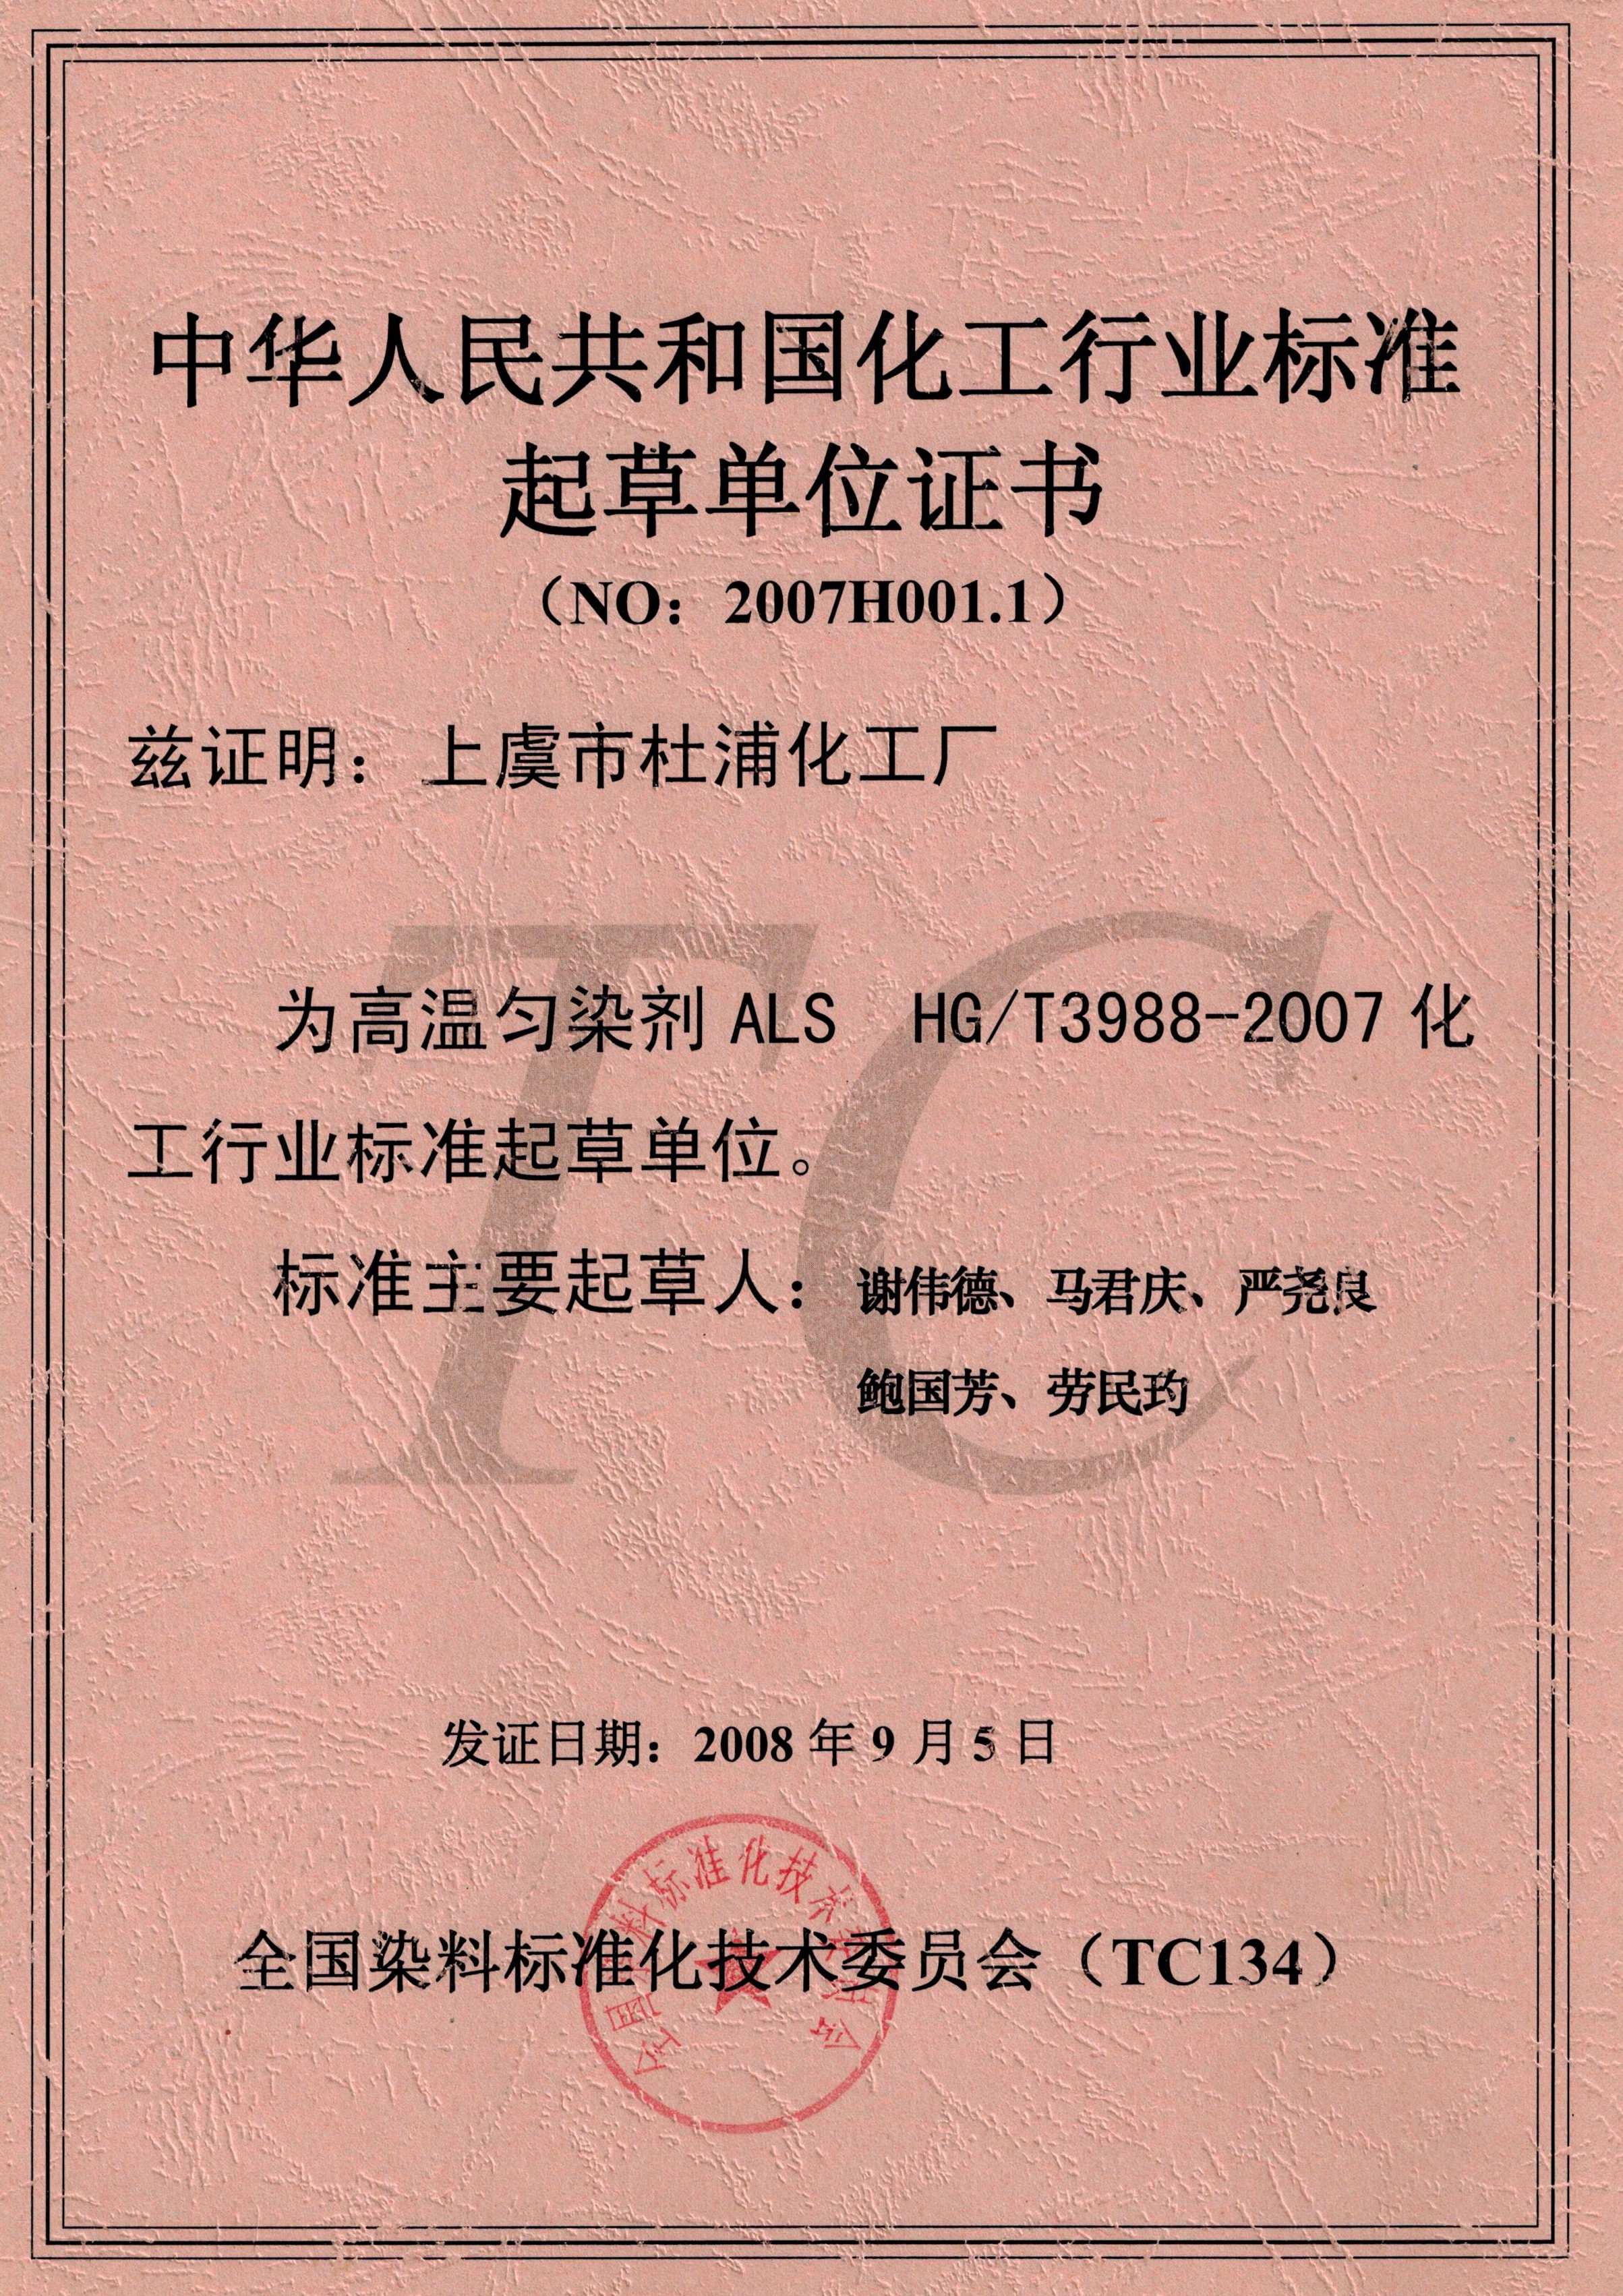 中华人民共和国化工行业标准起草单位证书（NO:2007H001.1）